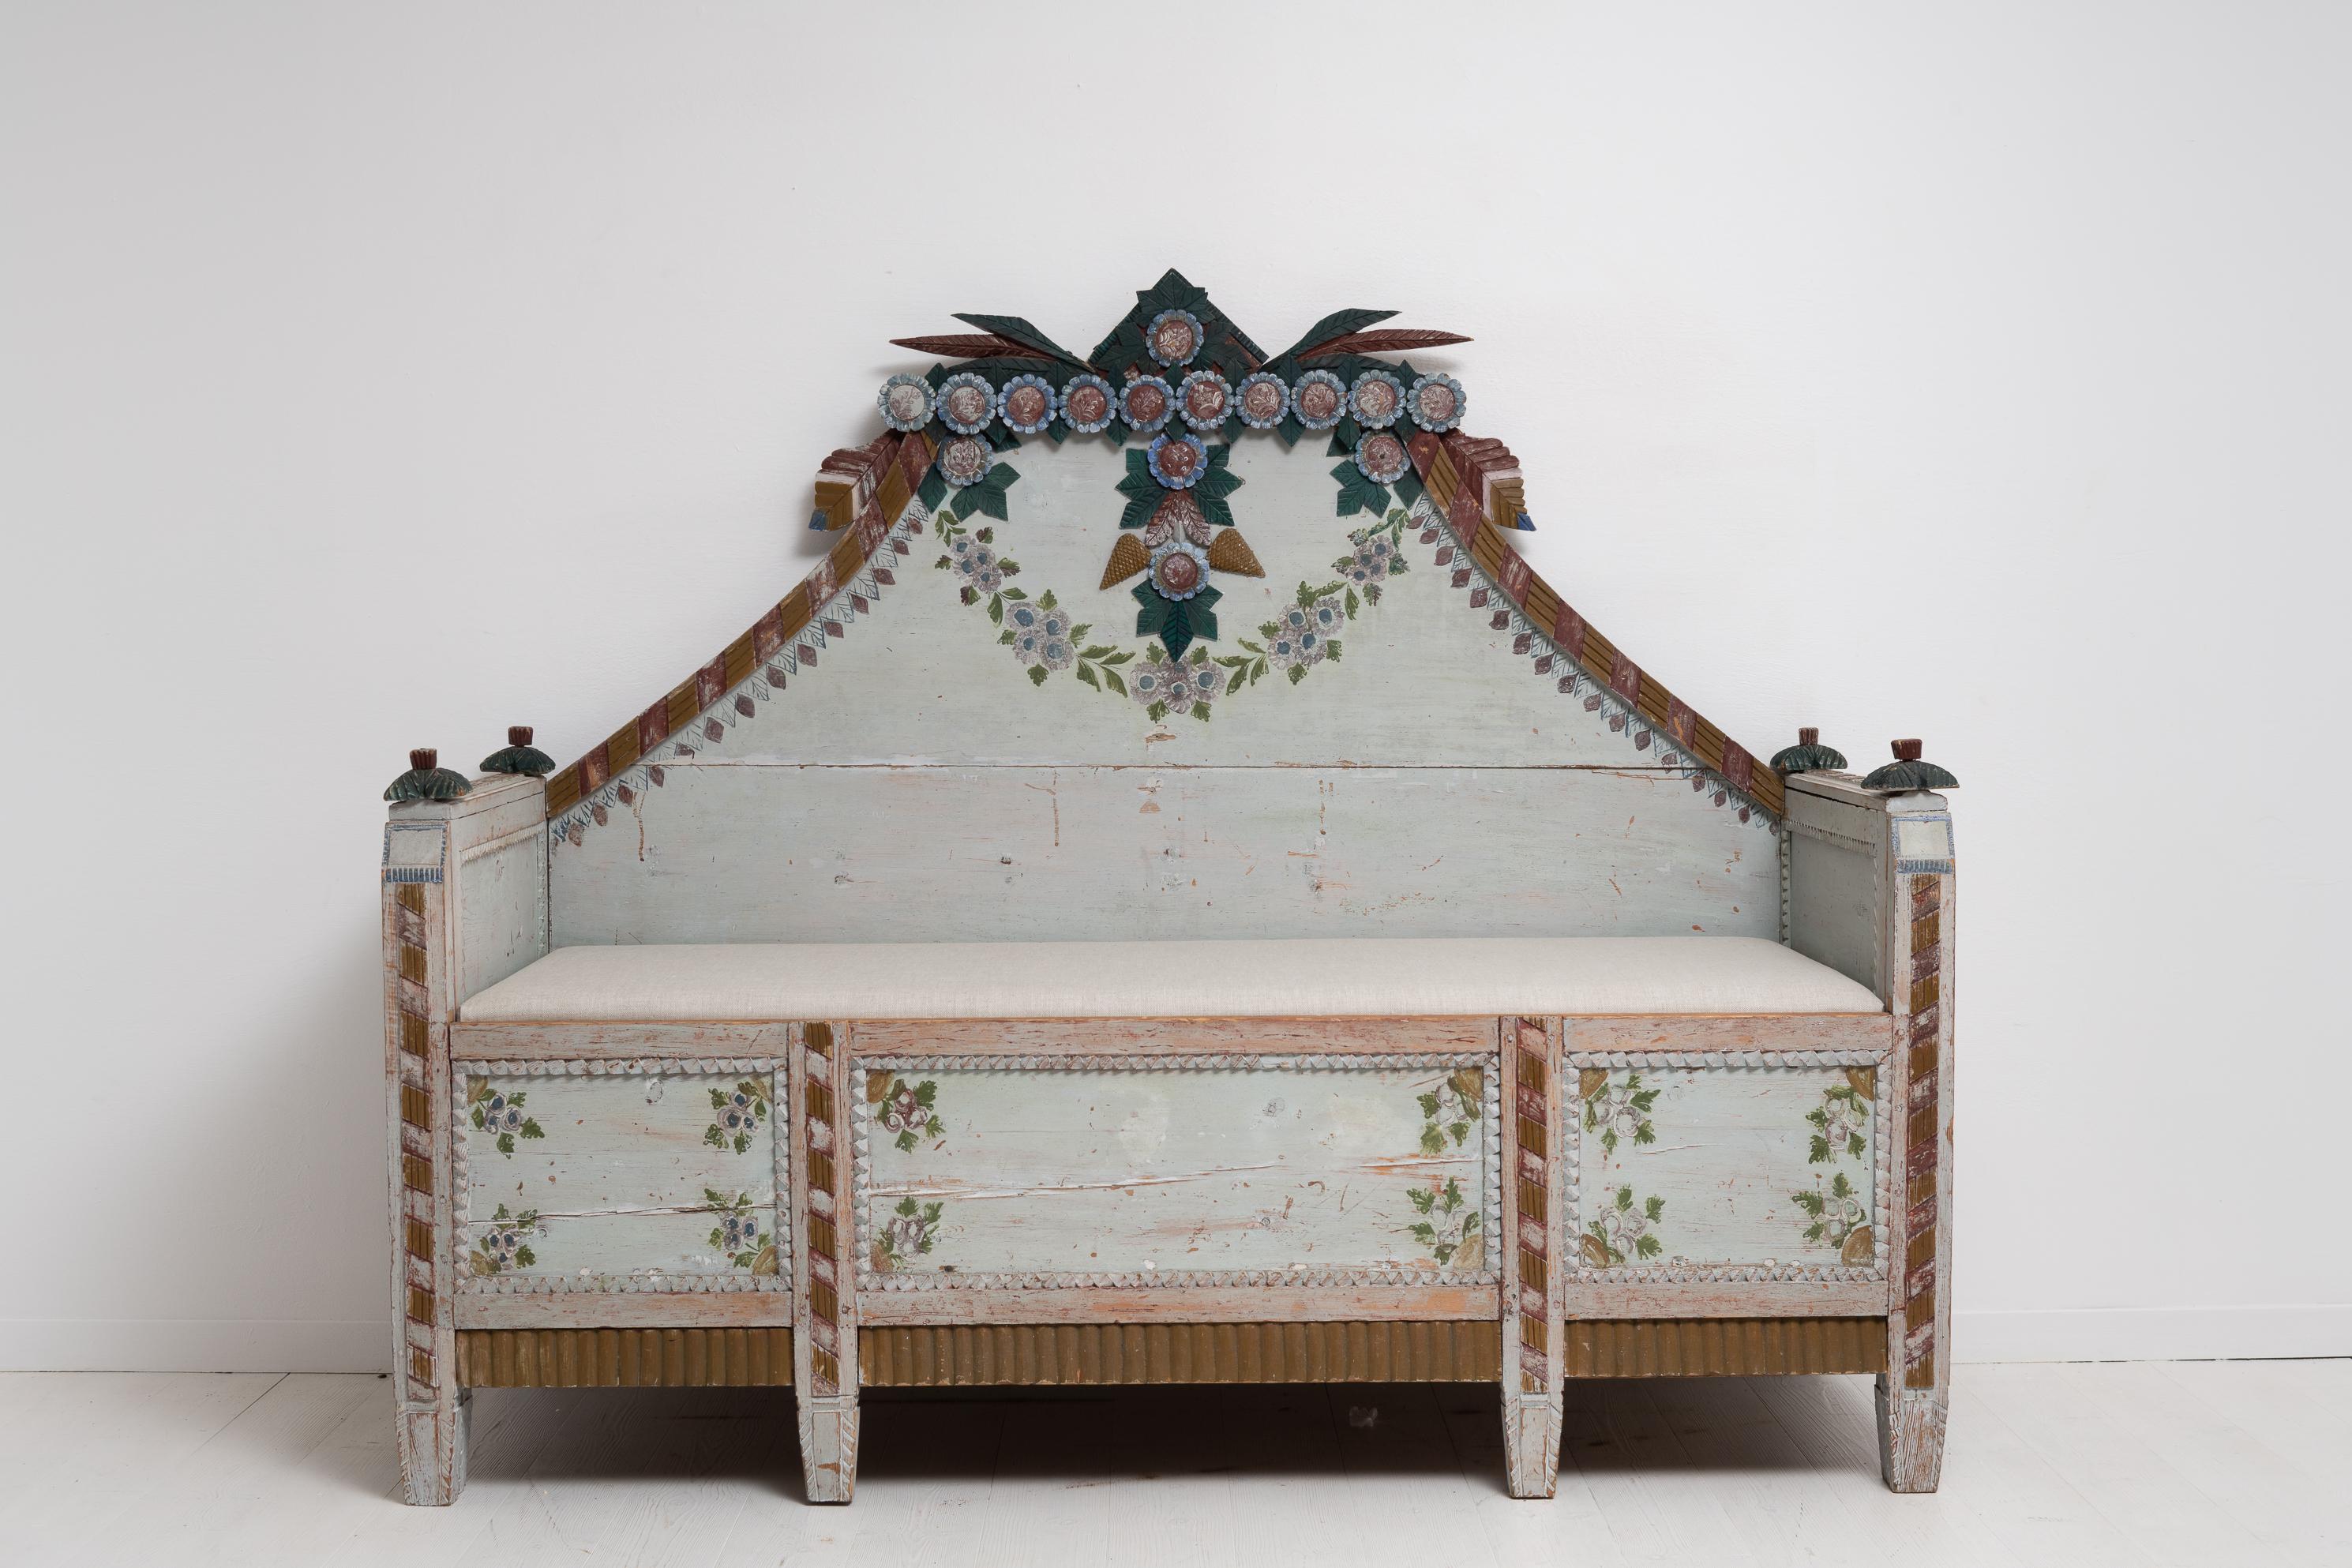 Banc ou sofa bleu très inhabituel de la fin des années 1700. Le canapé est un meuble de maison de campagne provenant d'Ångermanland en Suède. Ce canapé est très inhabituel, très probablement unique en son genre. Il trouve son origine dans la